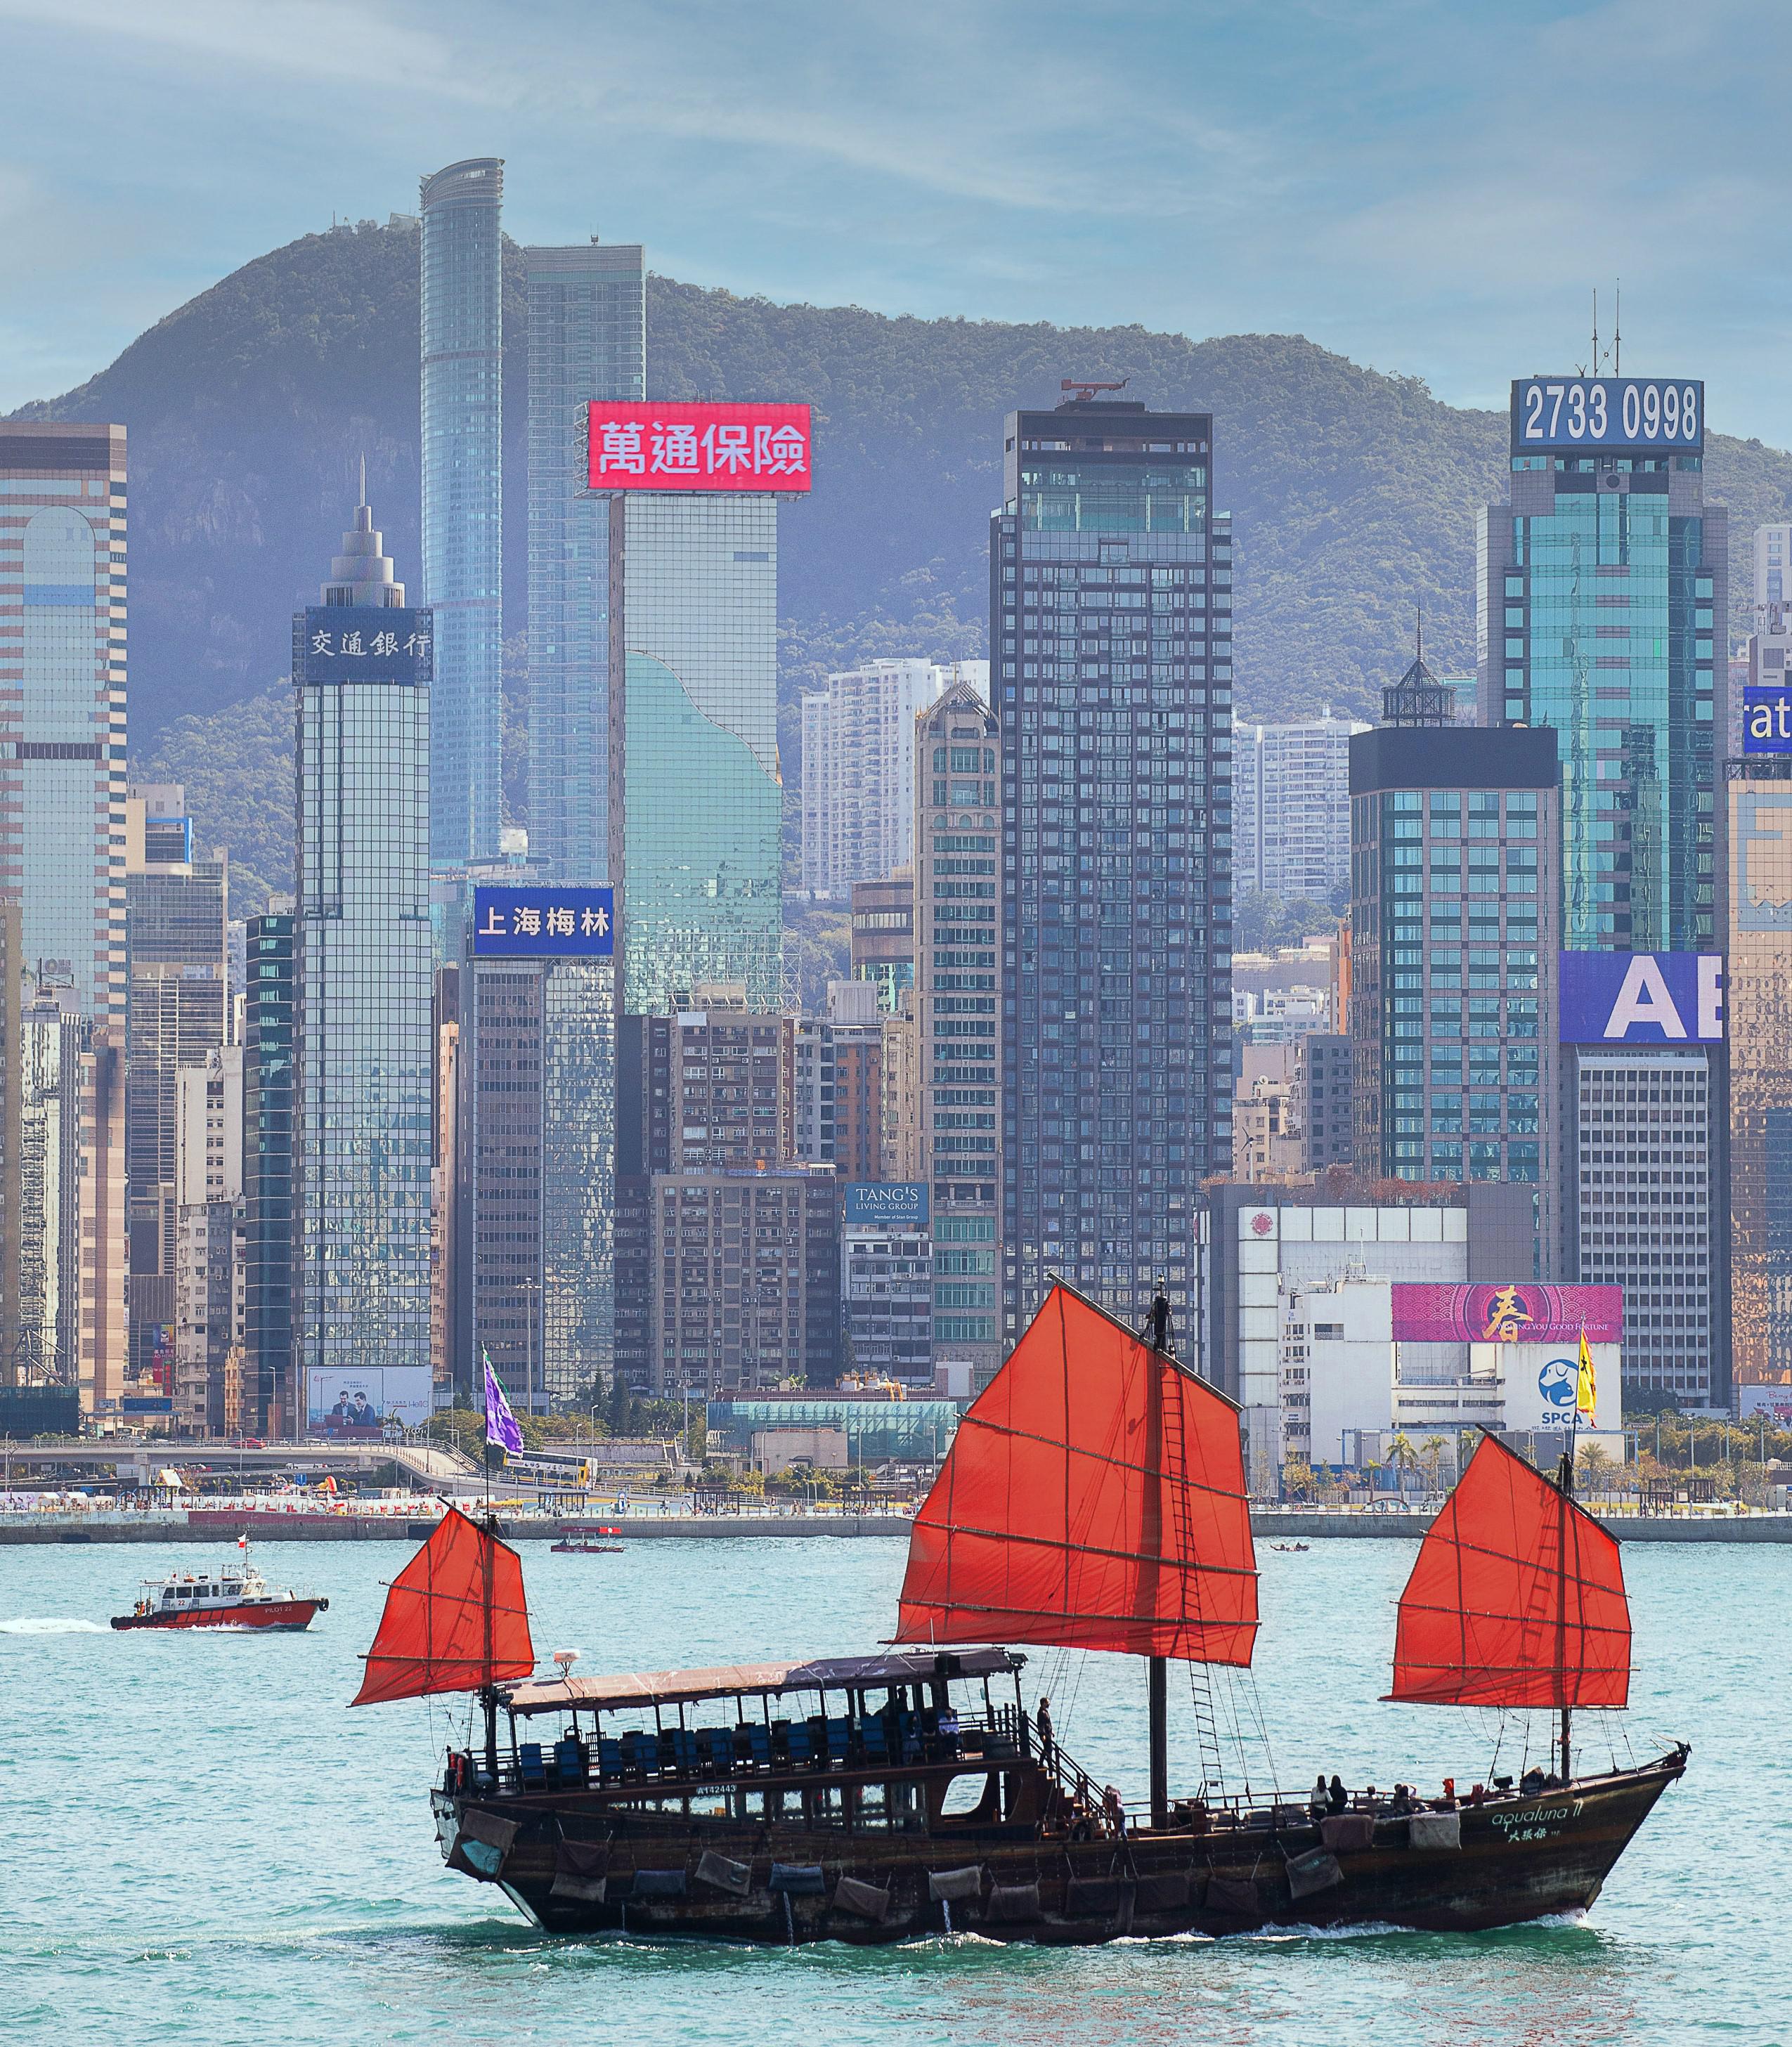 萬通保險的大型樓頂LED屏寓意品牌對保險業和香港作出貢獻的承諾。